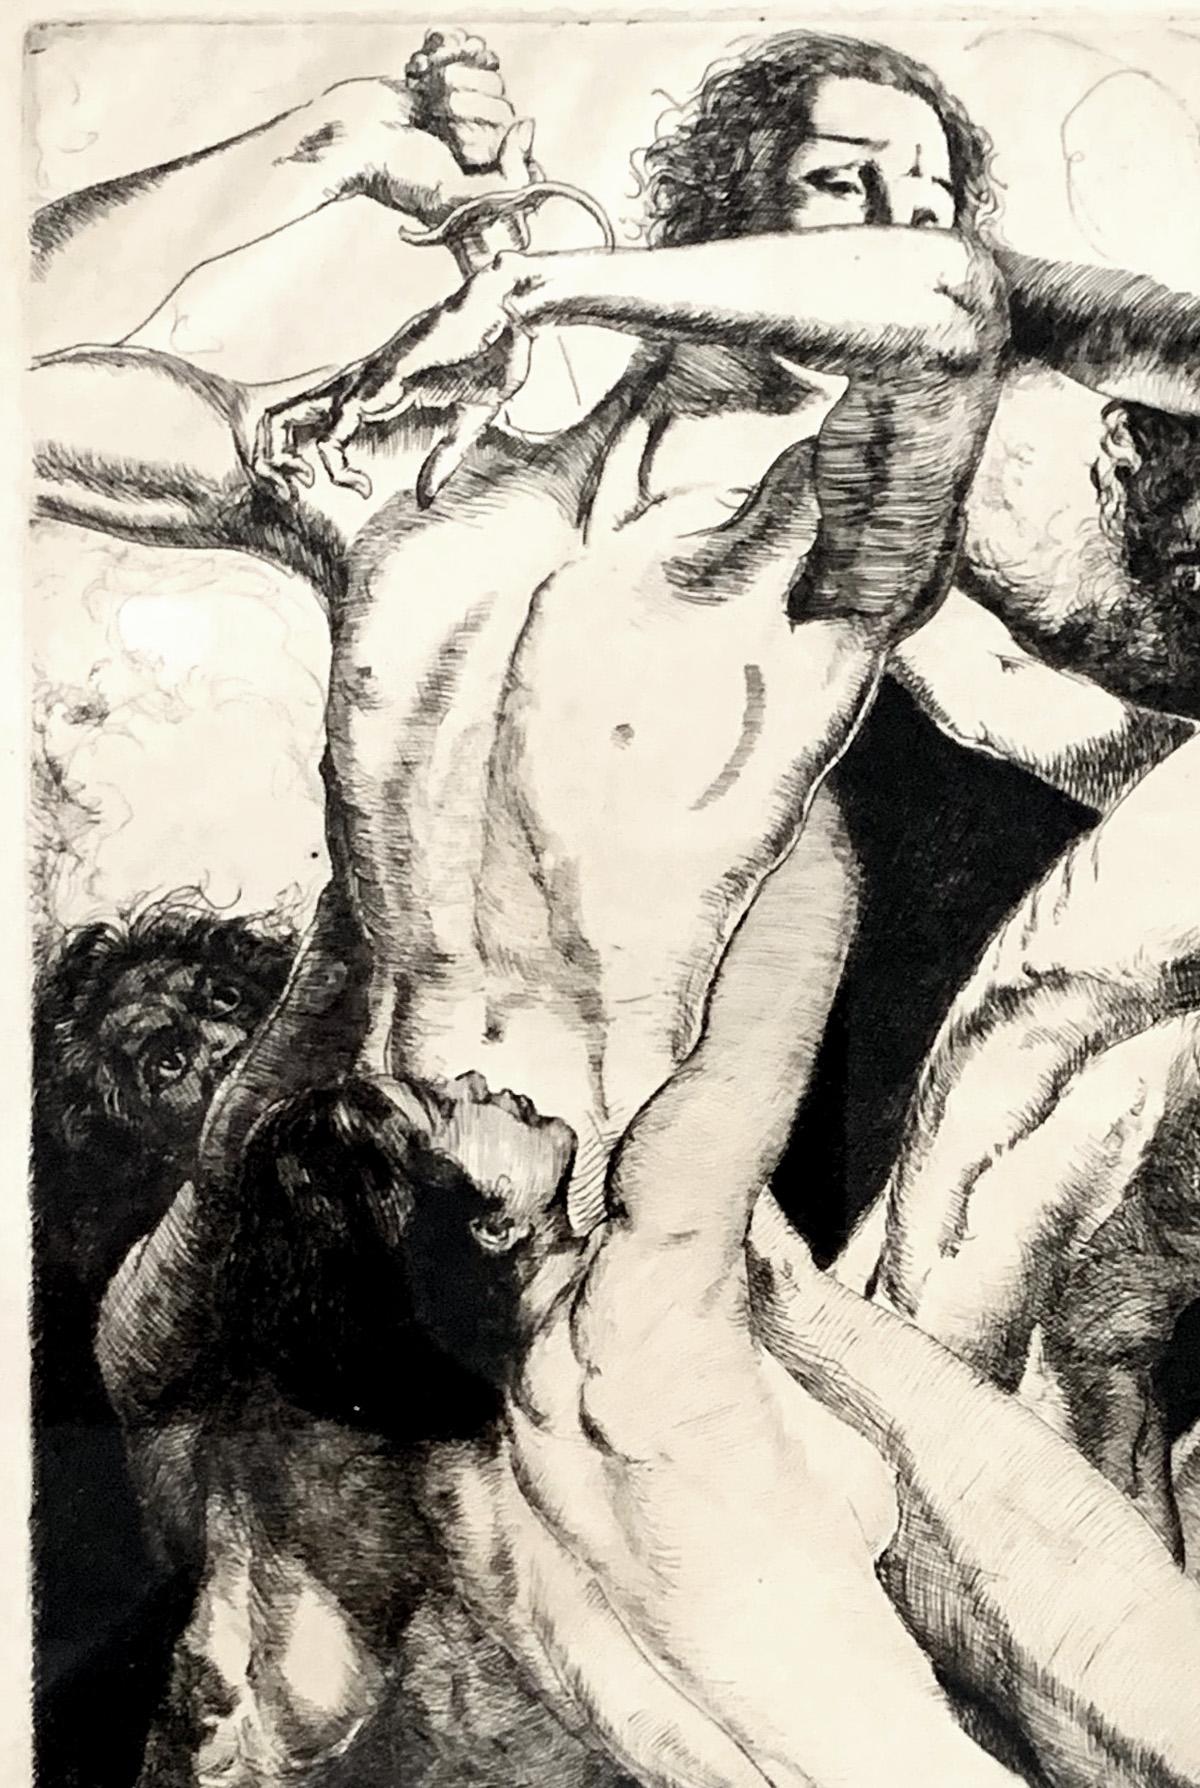 Dieser seltene Druck, der ein komplexes Zusammenspiel von geschmeidigen nackten Figuren im Kampf zeigt, von denen die obere männliche Figur ein großes Schwert in die Höhe hält, wurde von dem famosen Künstler und Illustrator Willy Pogany in den